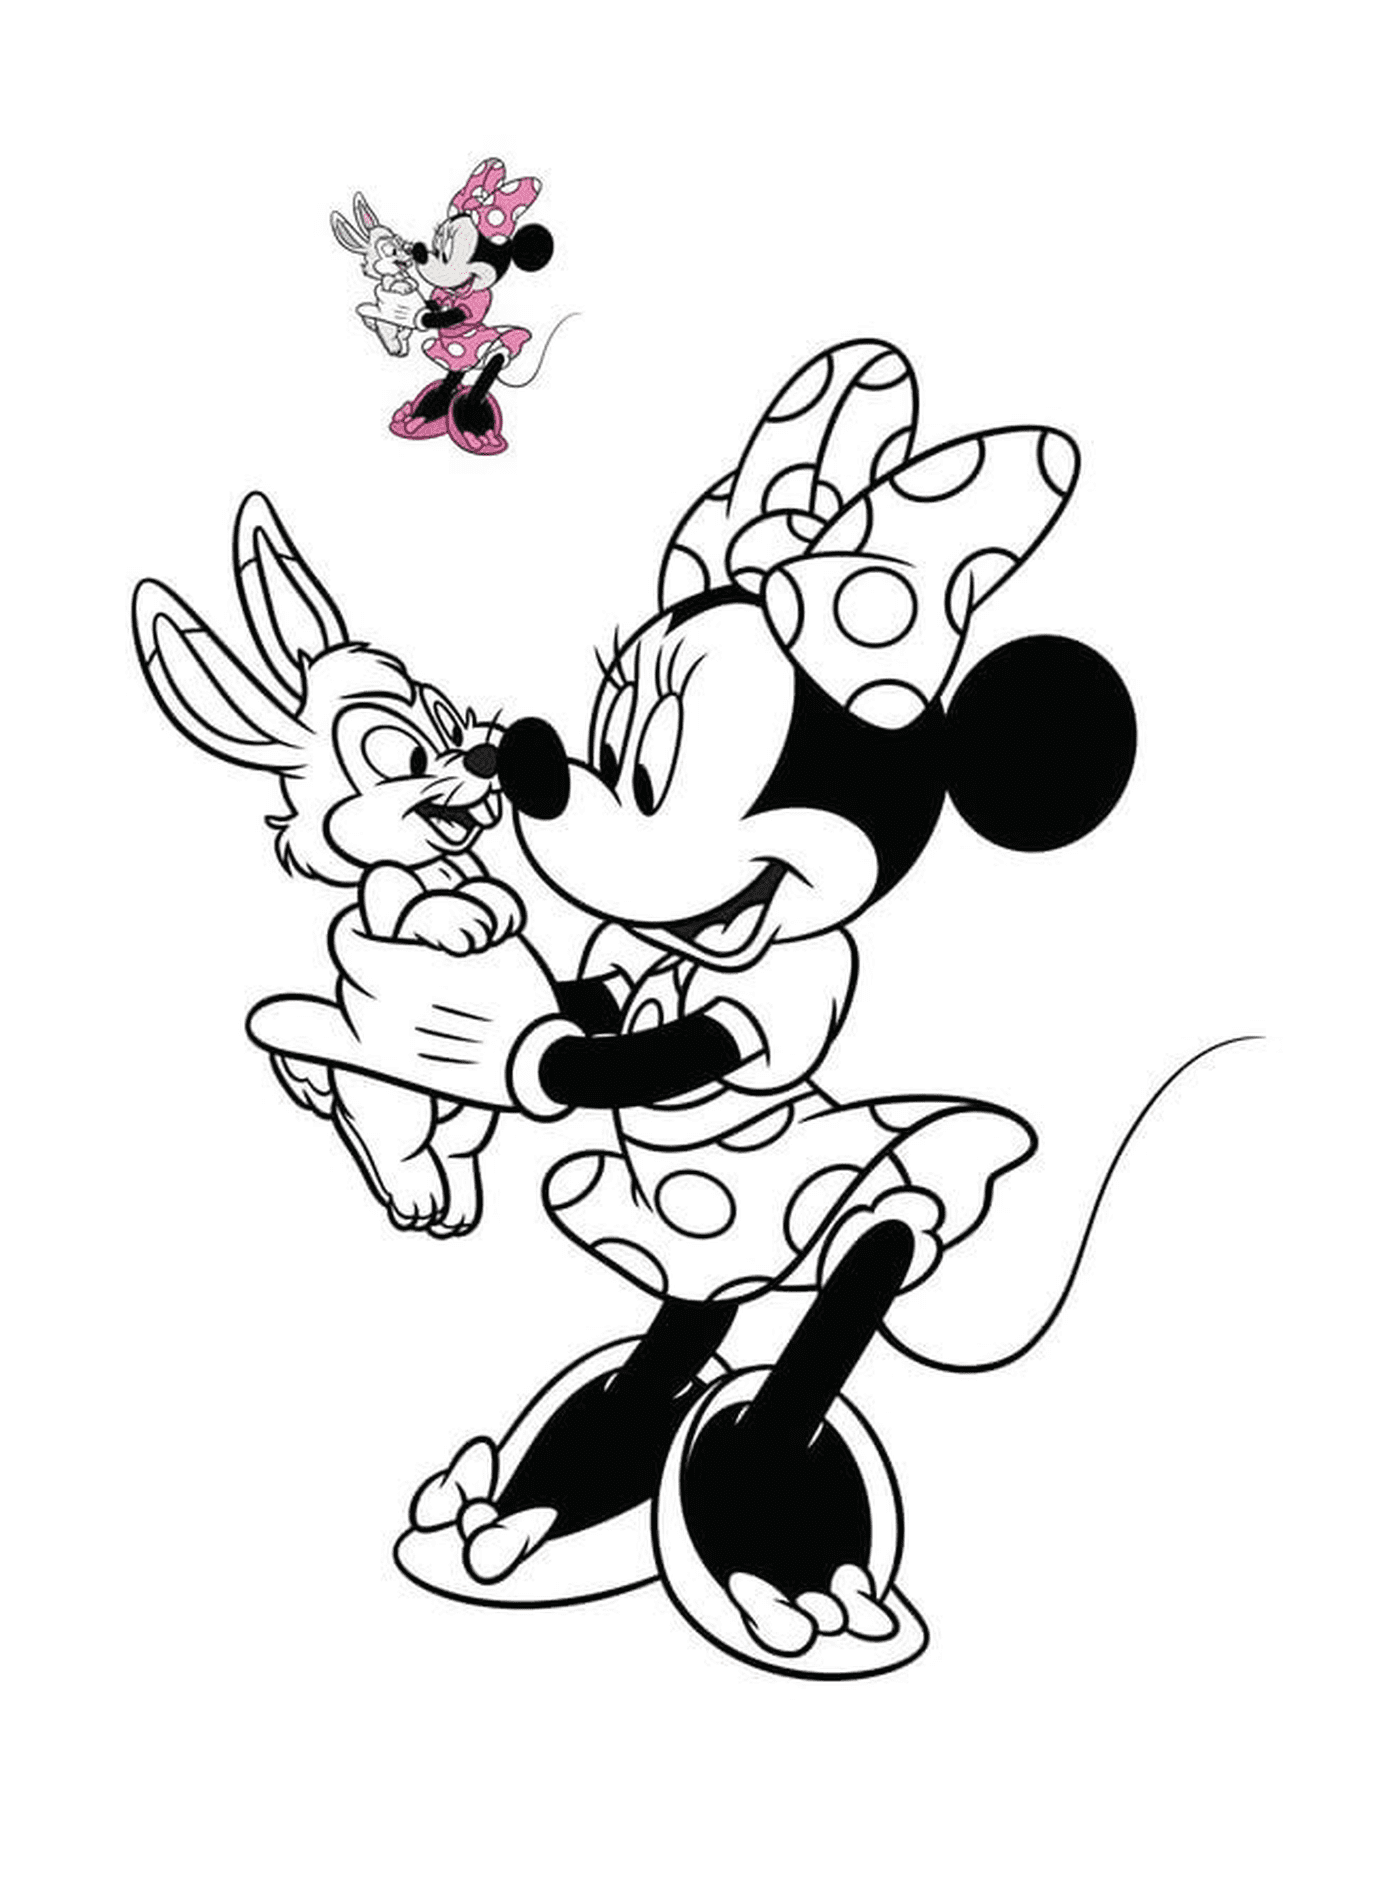  Minnie Mouse com um coelho da Disney 